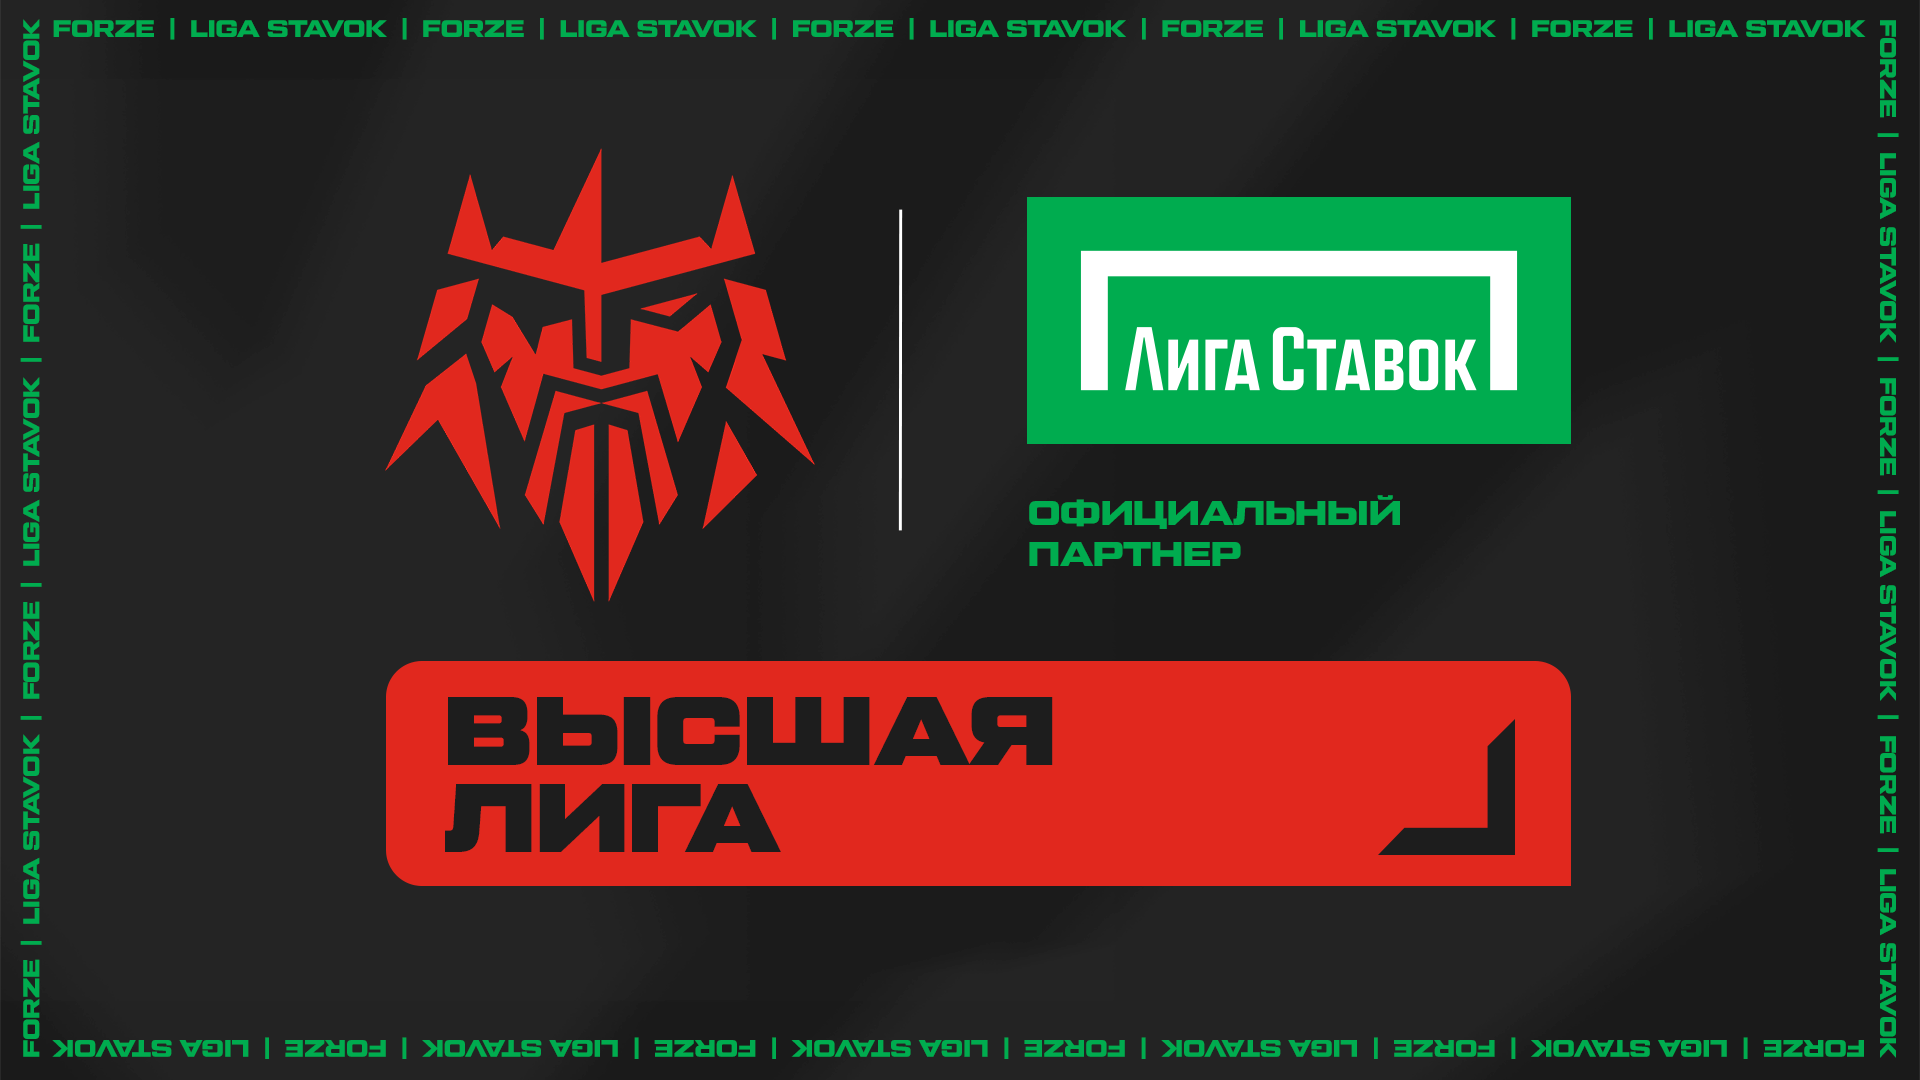 Букмекерская компания "Лига Ставок" — официальный партнер киберспортивной организации Forze Esports!